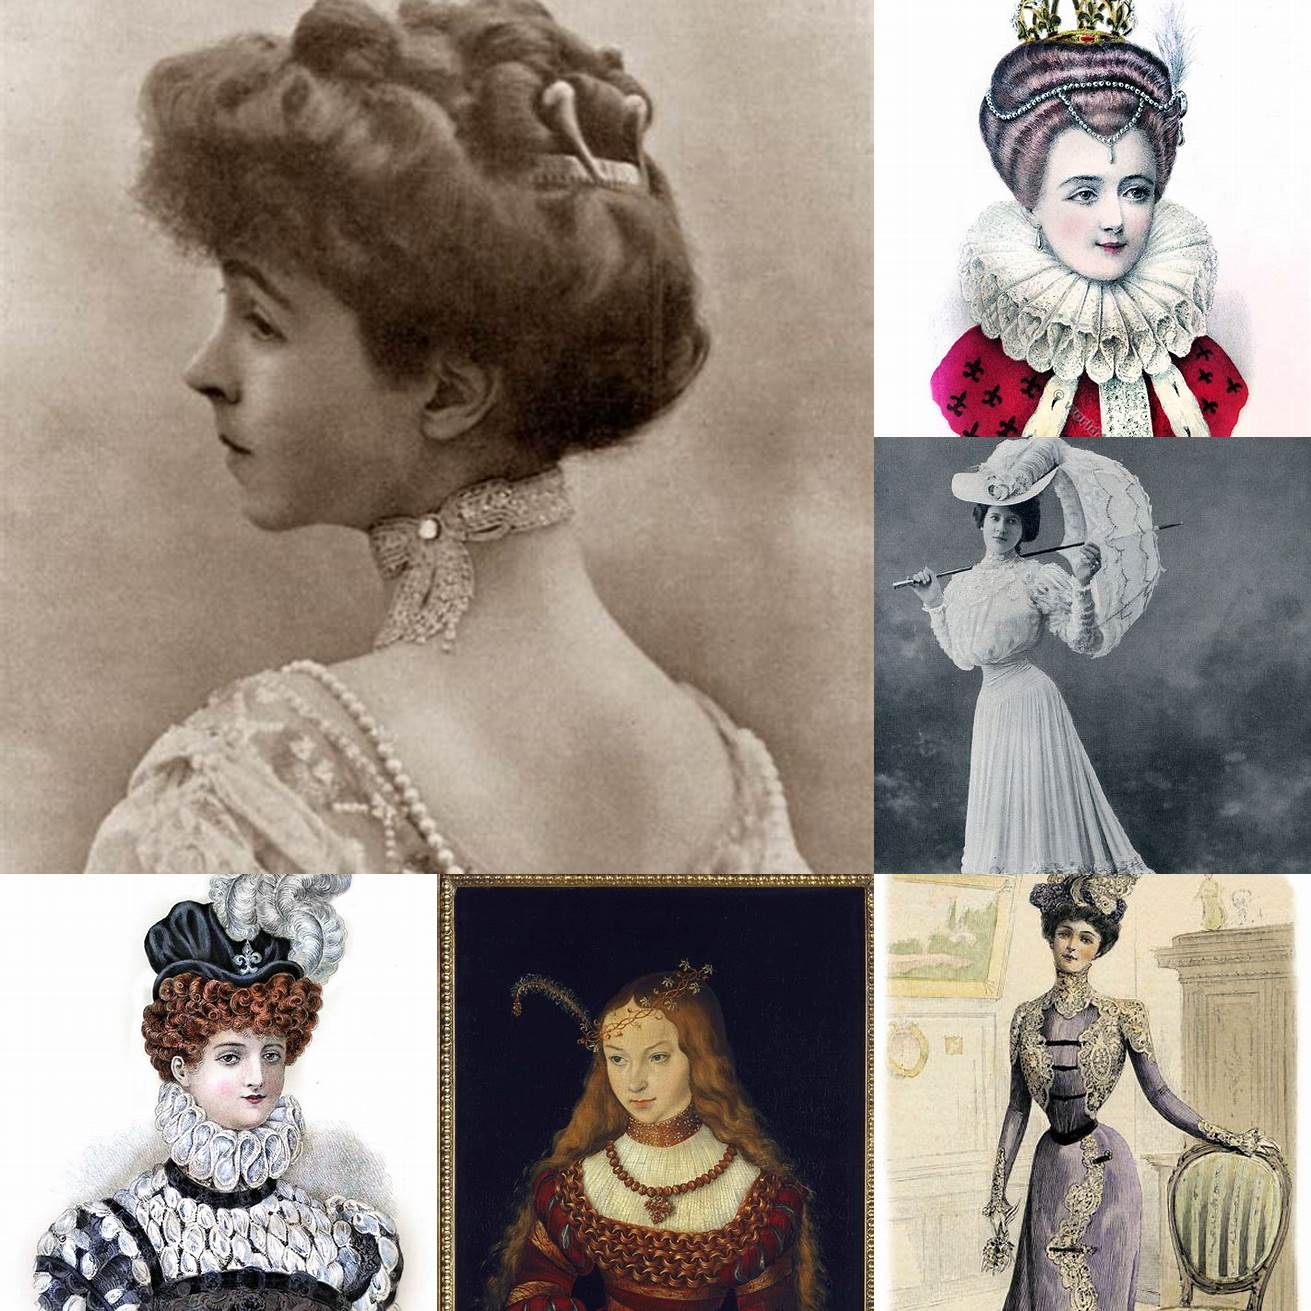 Image 1 - Femme portant une ancienne coiffure féminine synonyme avec des rubans et des fleurs décoratives